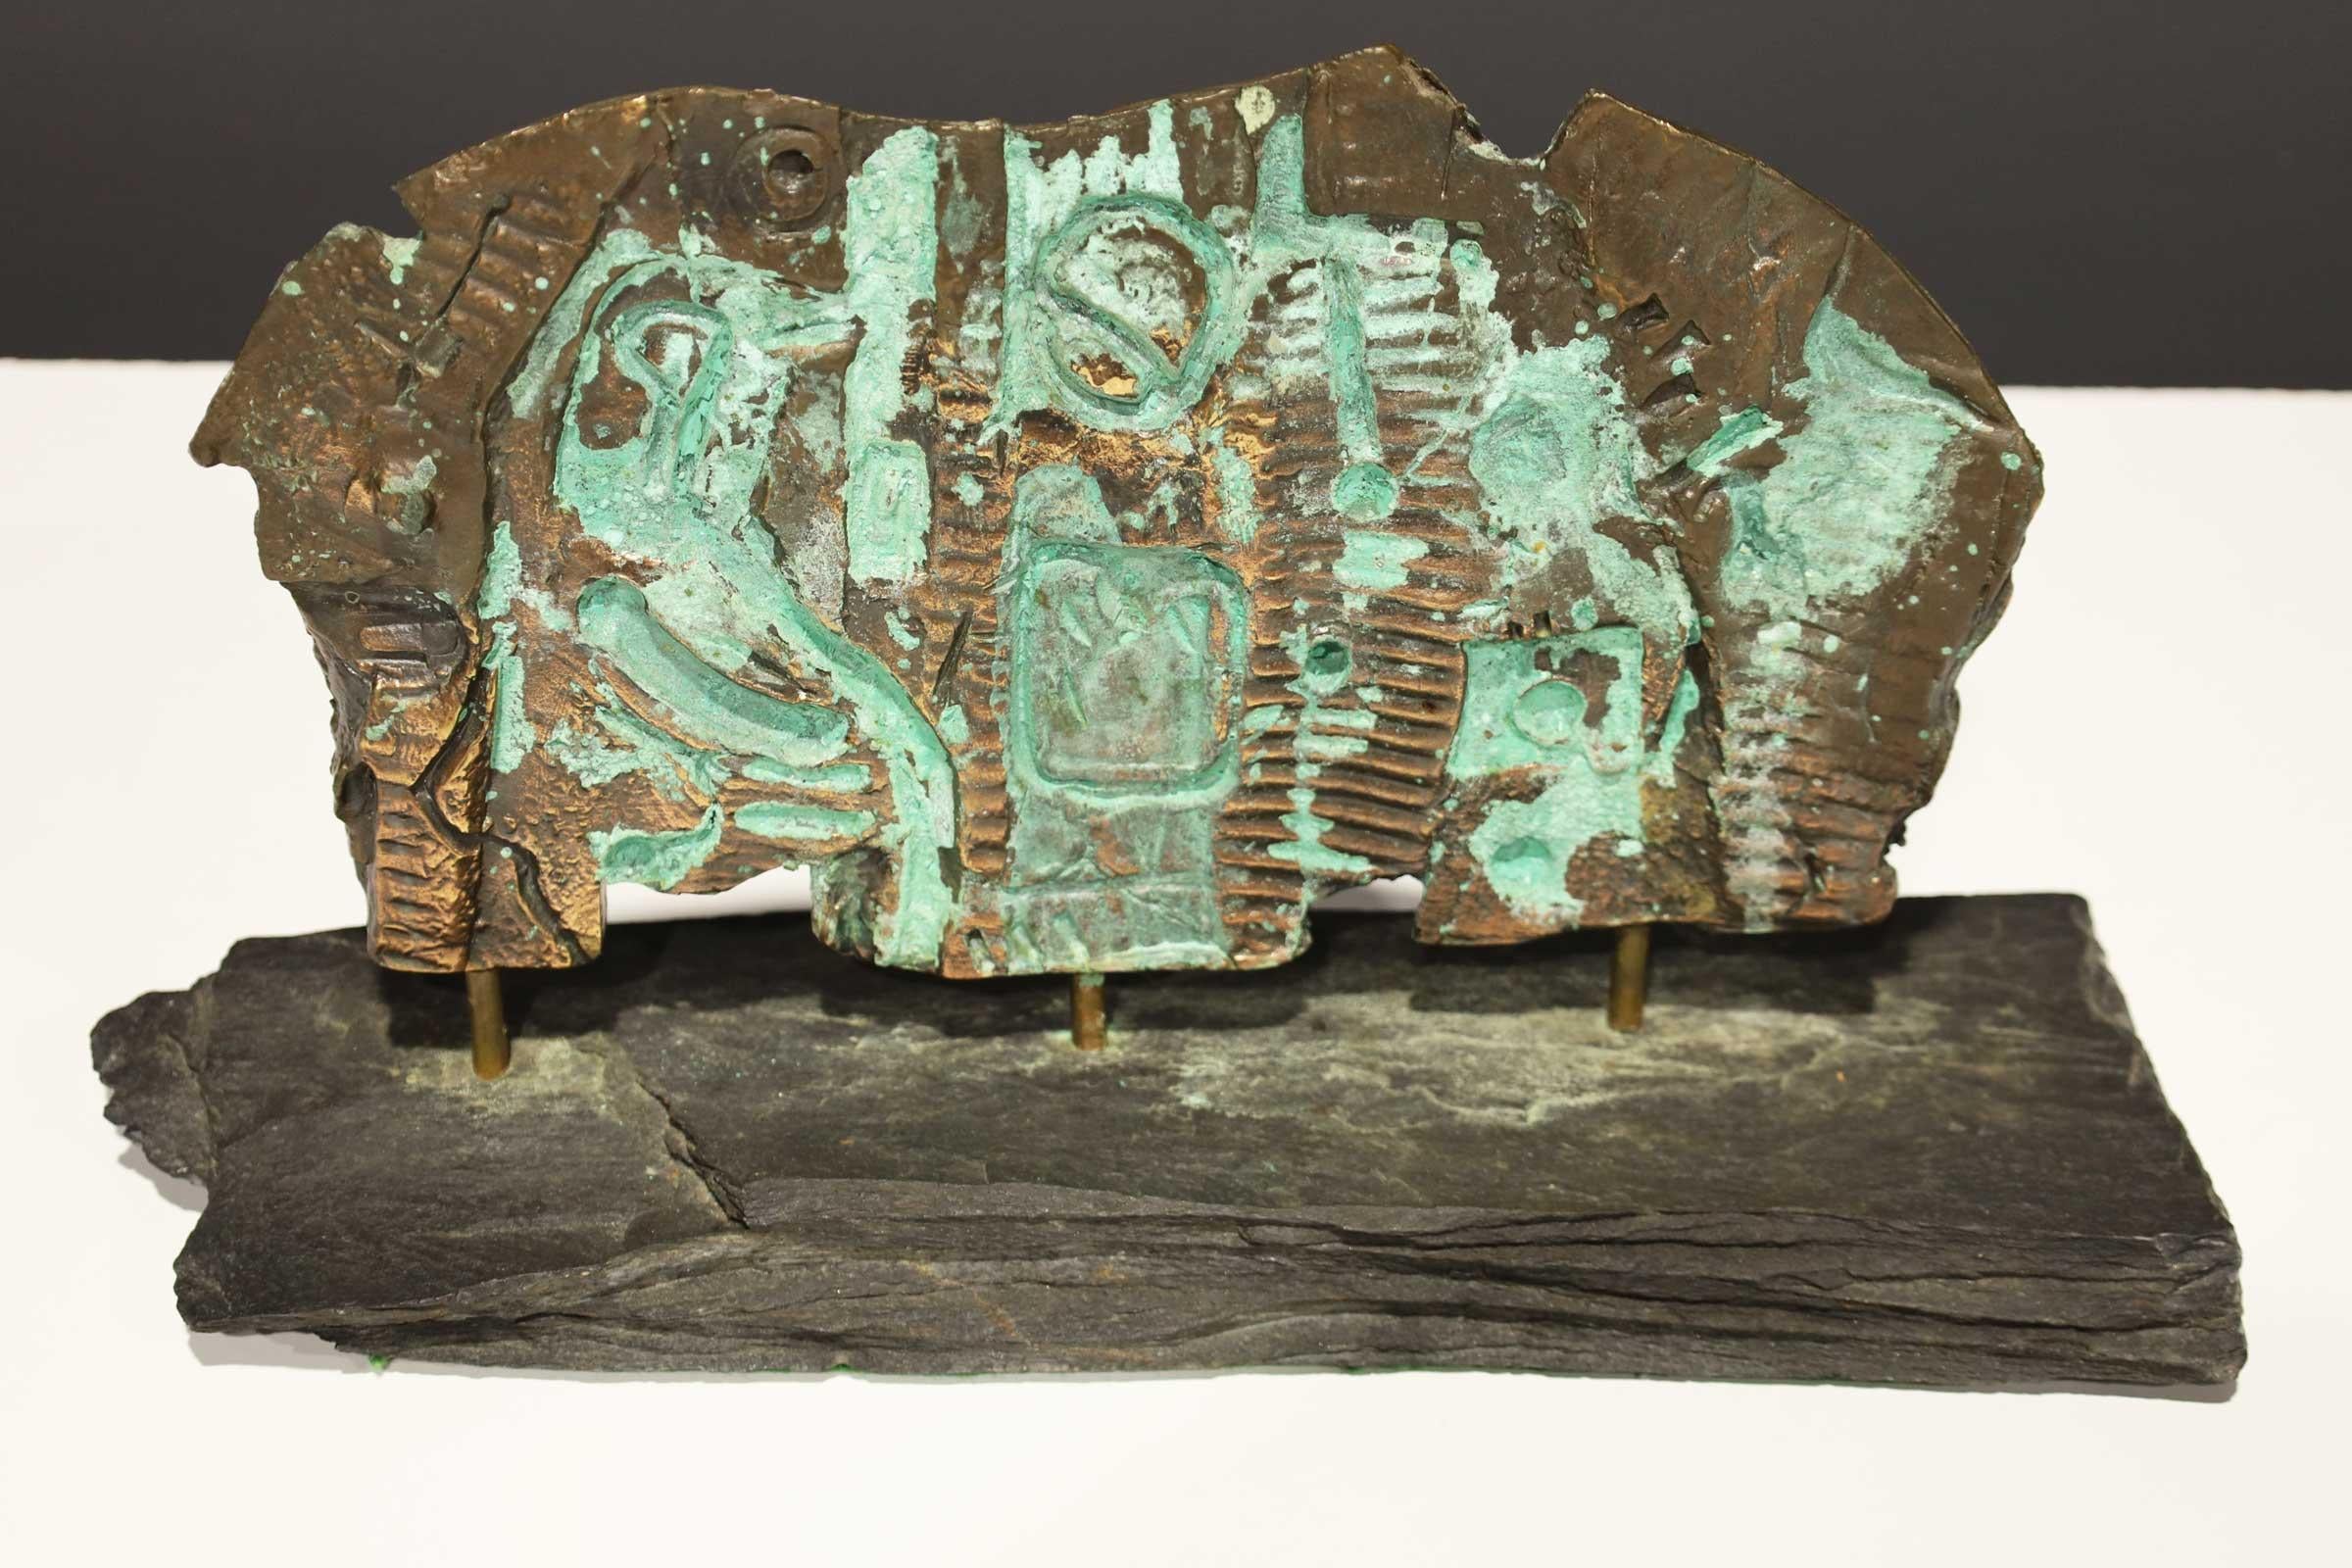 Bronze bien oxydé, en forme de dalle, avec un décor figuratif imprimé, reposant sur une base sédimentaire. D'une importante succession.